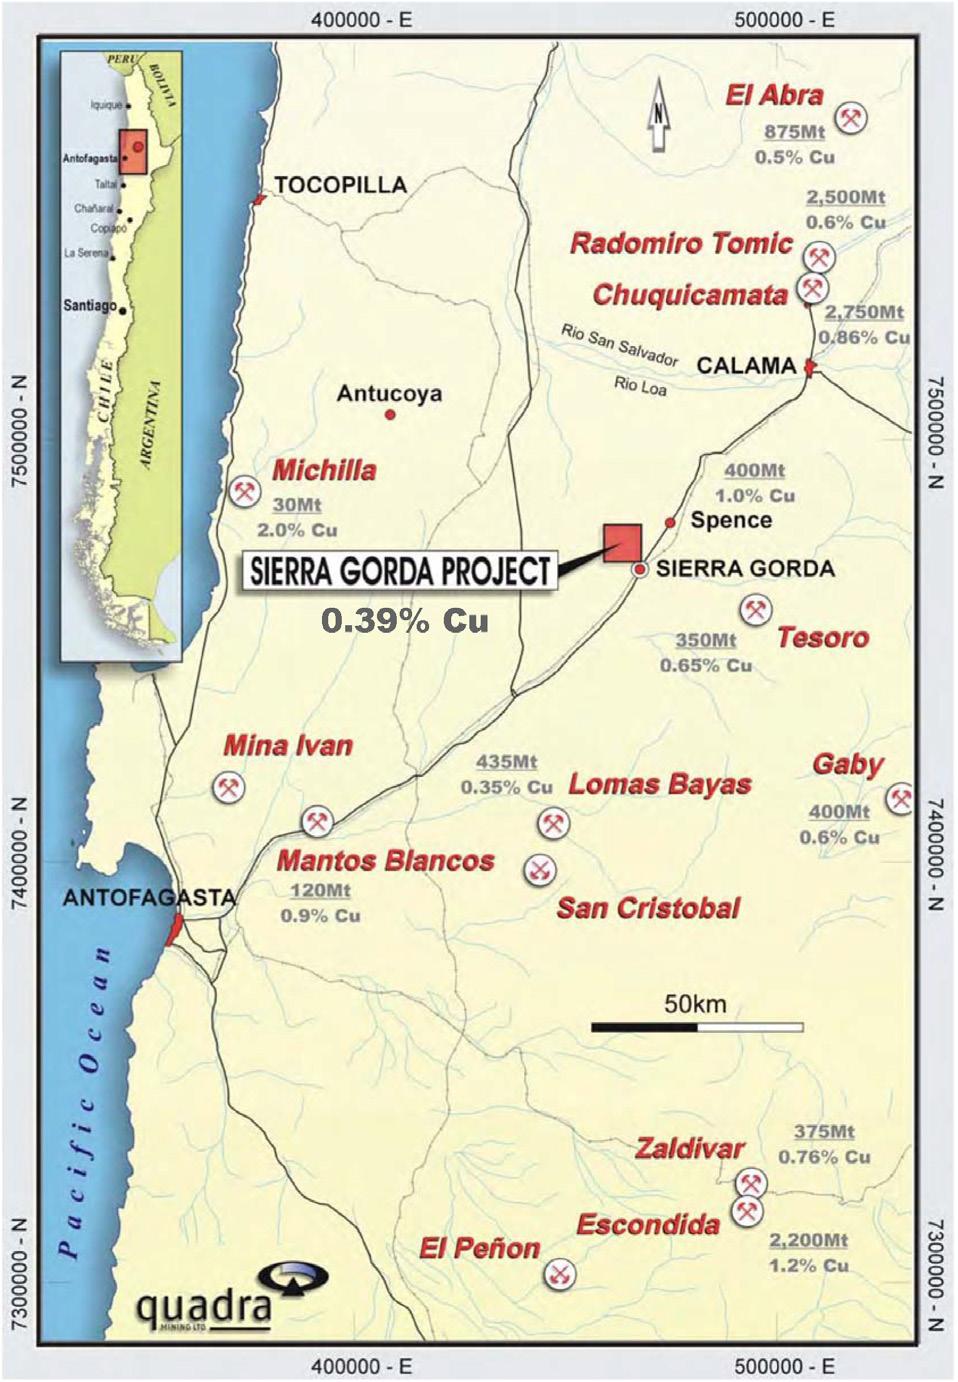 WPROWADZENIE Kopalnia Sierra Gorda zlokalizowana jest na pustyni Atacama, na obszarze administracyjnym Sierra Gorda w regionie Antofagasta, na północy Chile, około 60 km na południowy zachód od